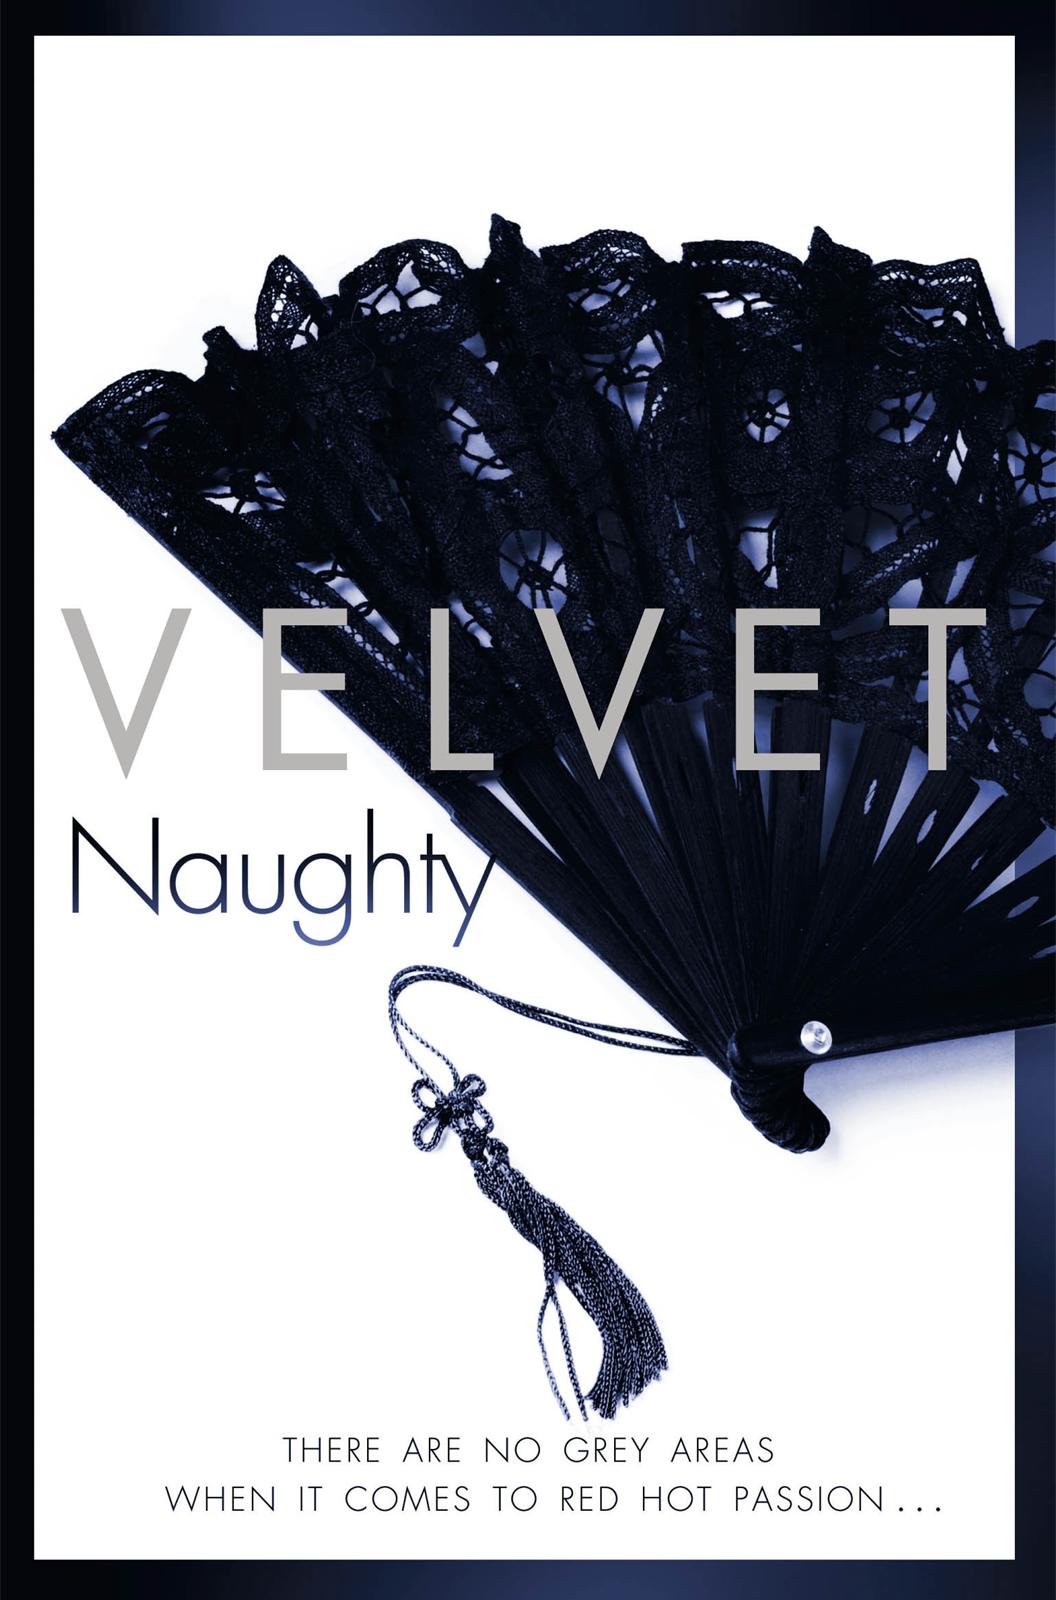 Naughty by Velvet